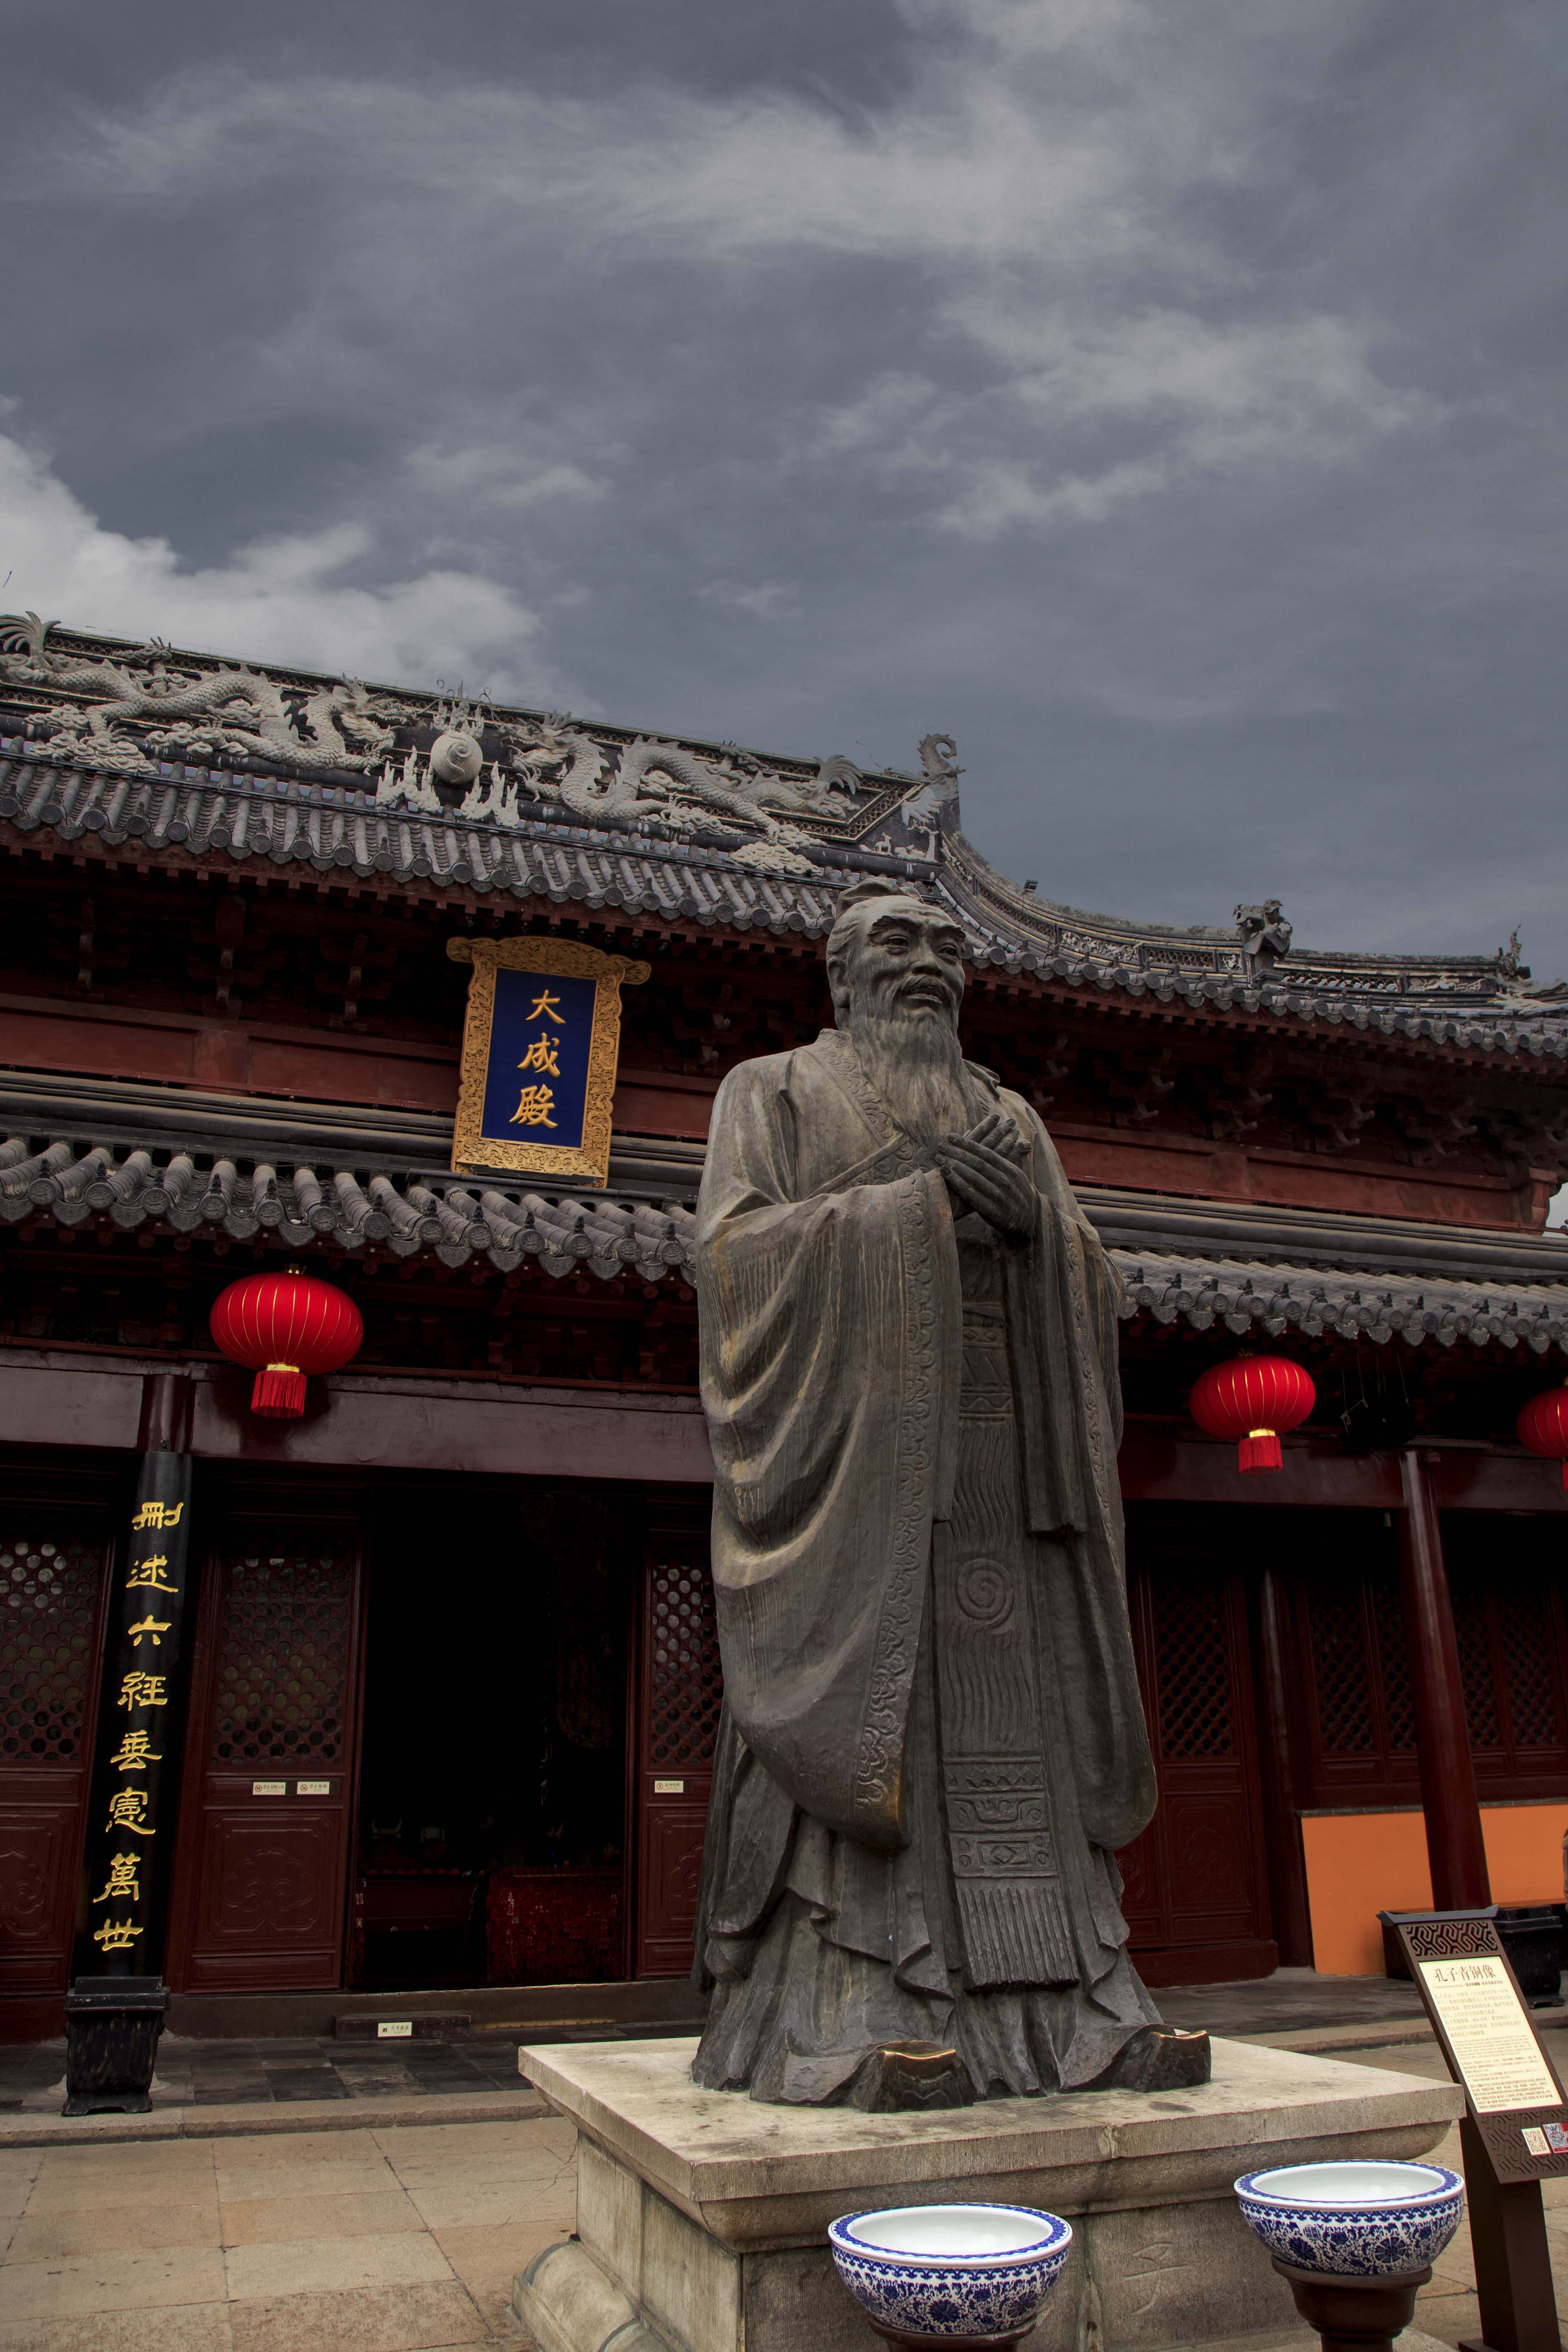 位于南京市玄武区鸡笼山东麓山阜上,又称古鸡鸣寺,至今已有一千